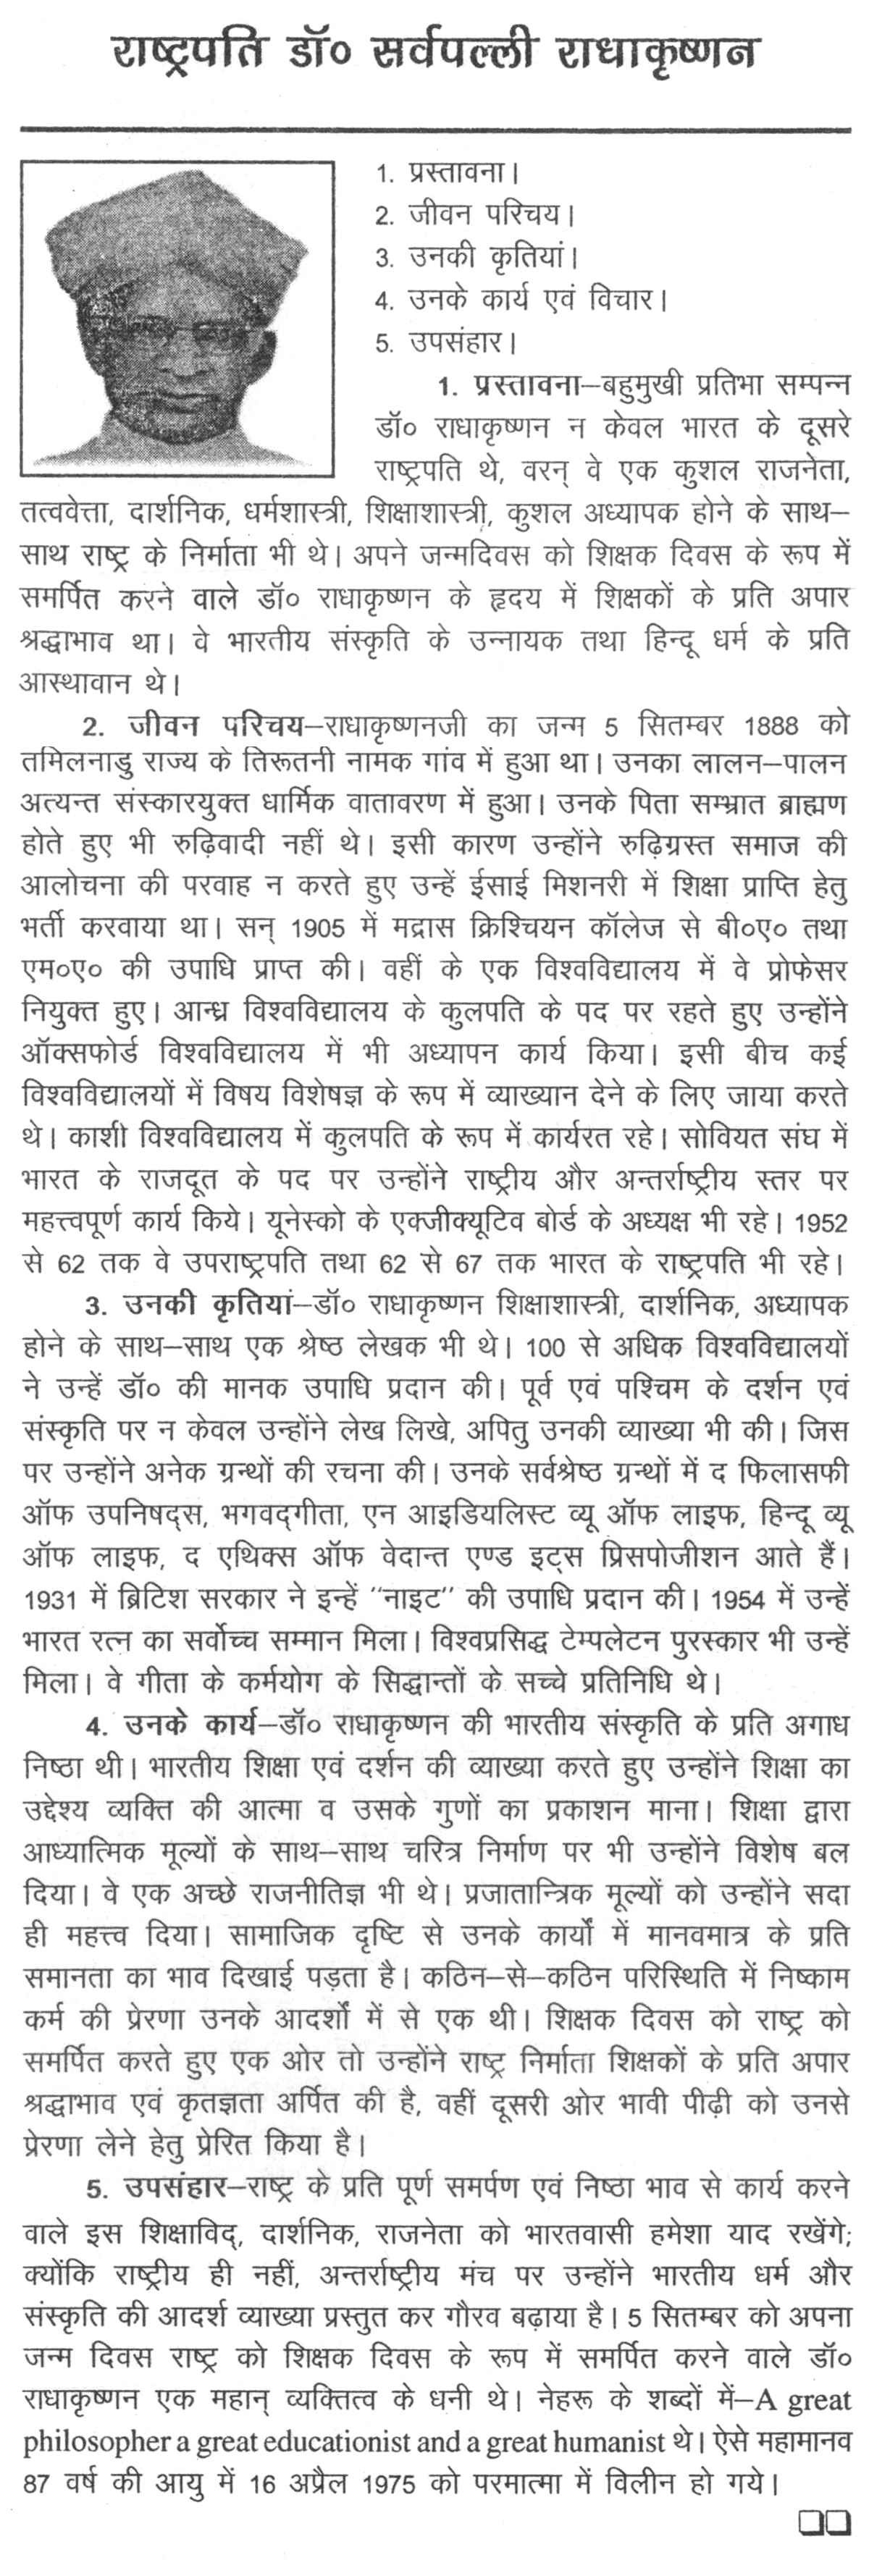 sarvepalli radhakrishnan essay in hindi